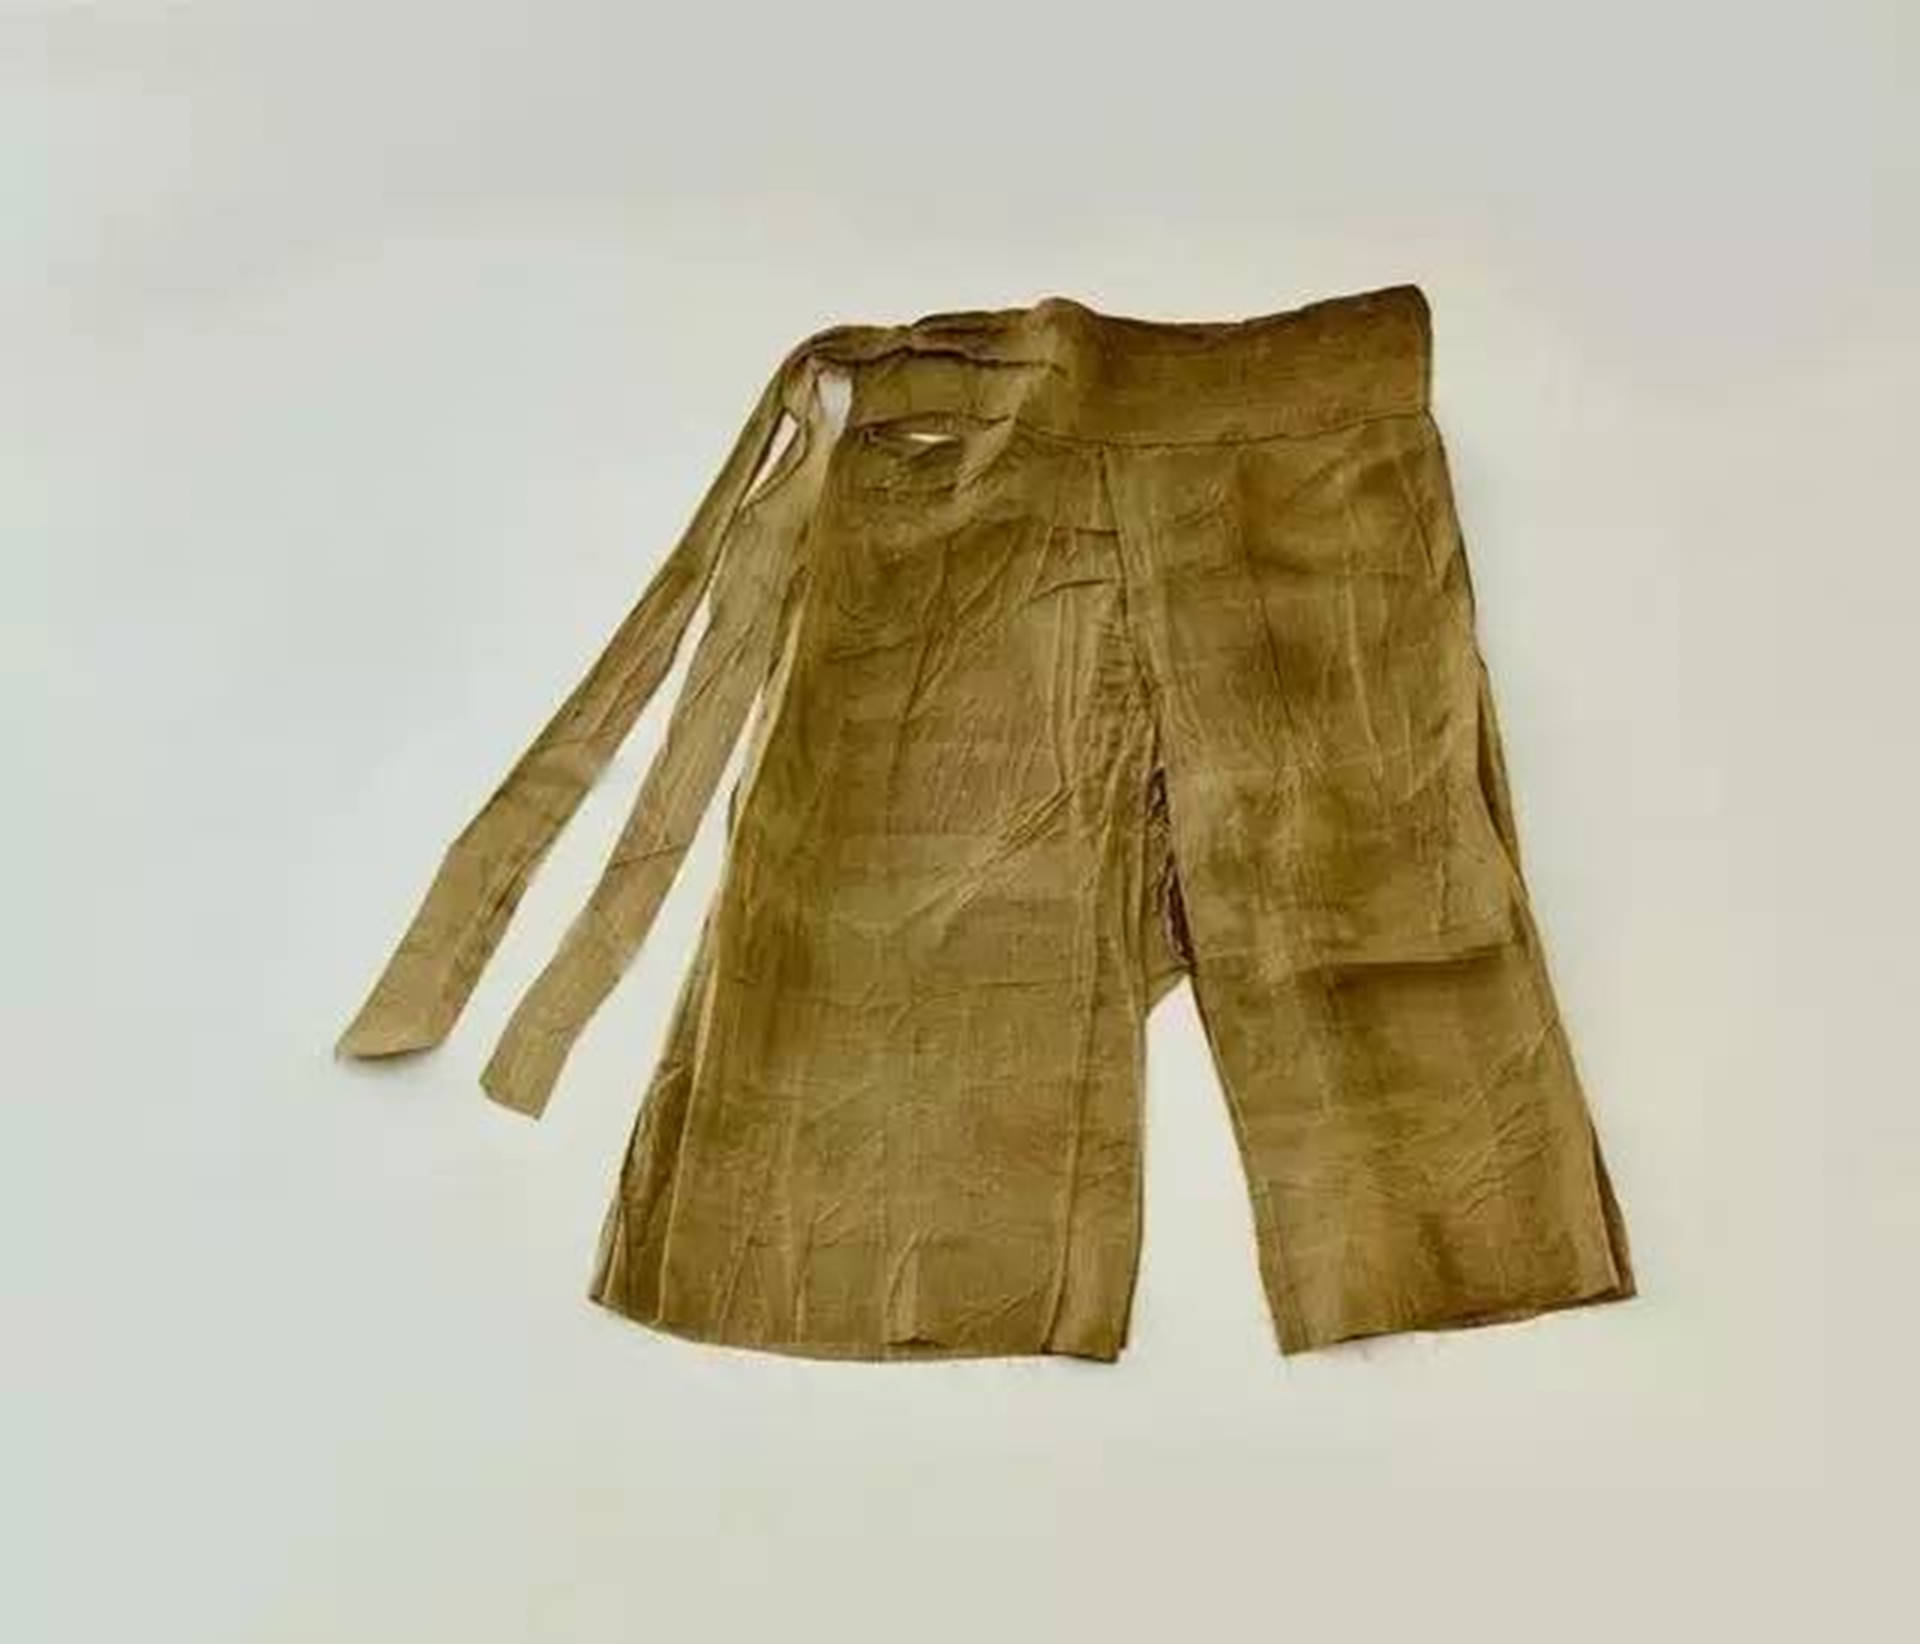 汉朝开裆裤盛行,是古代人的开放,还是有其他原因?